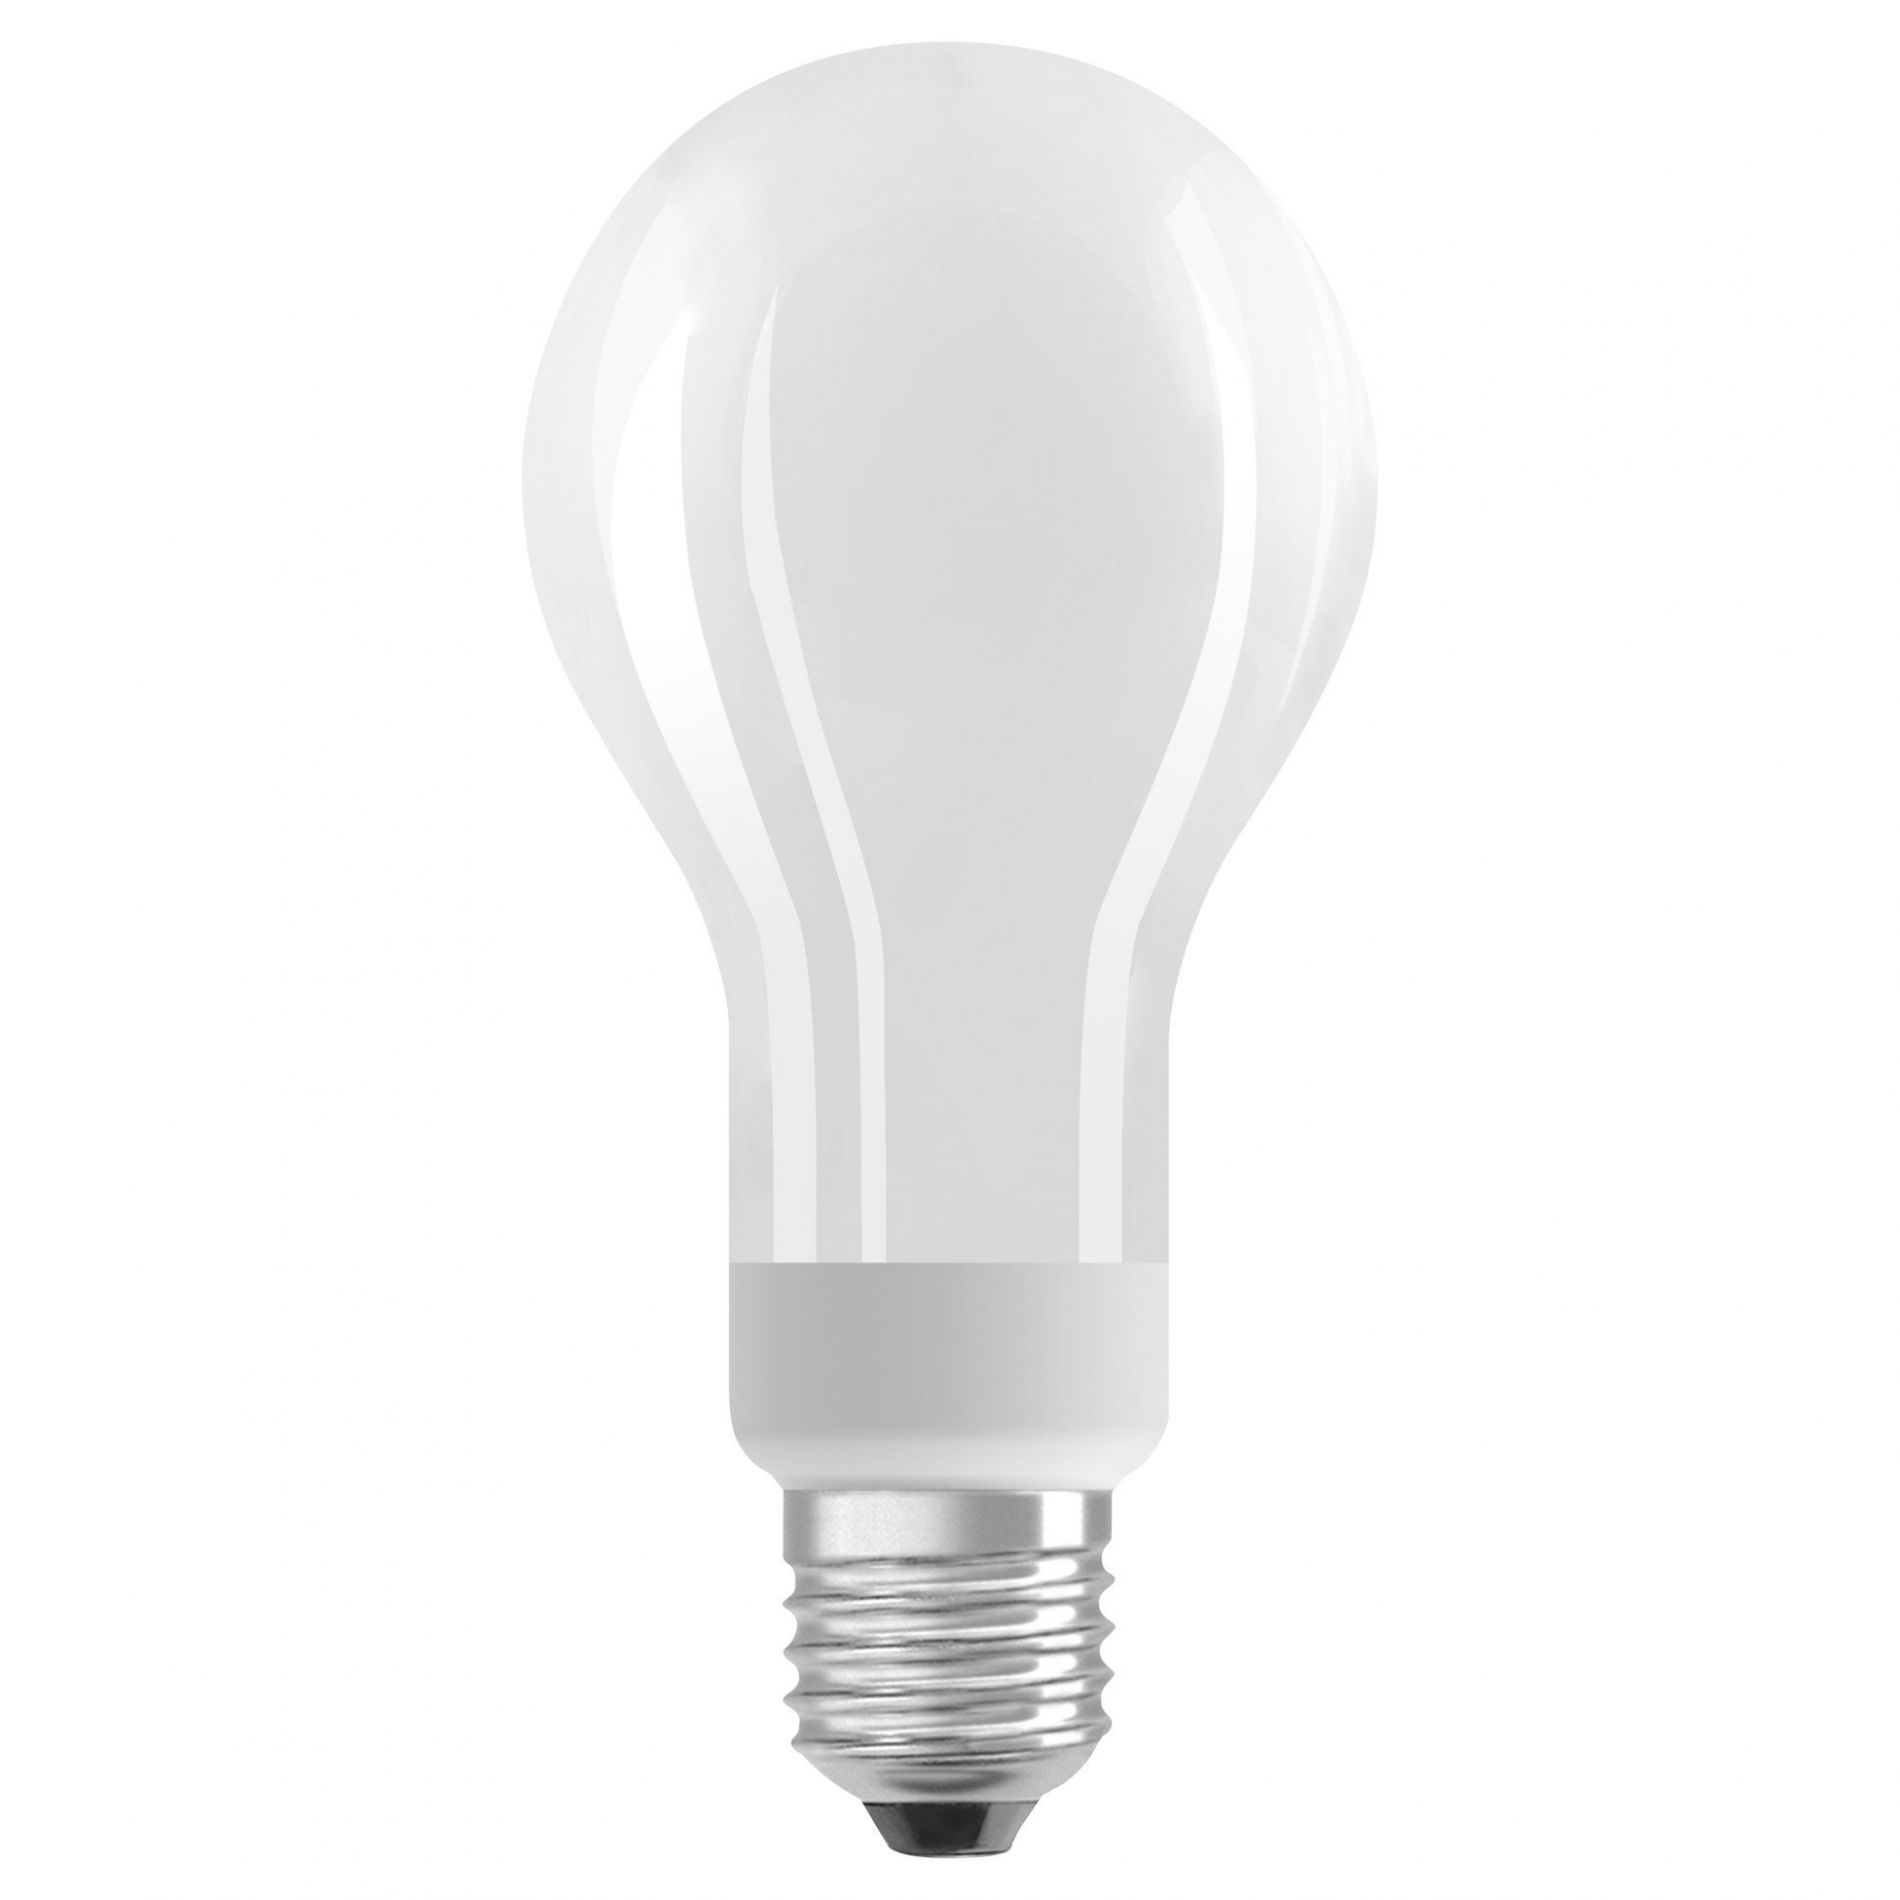 Ampoule E14 ronde blanc chaud, chez un specialiste luminaires